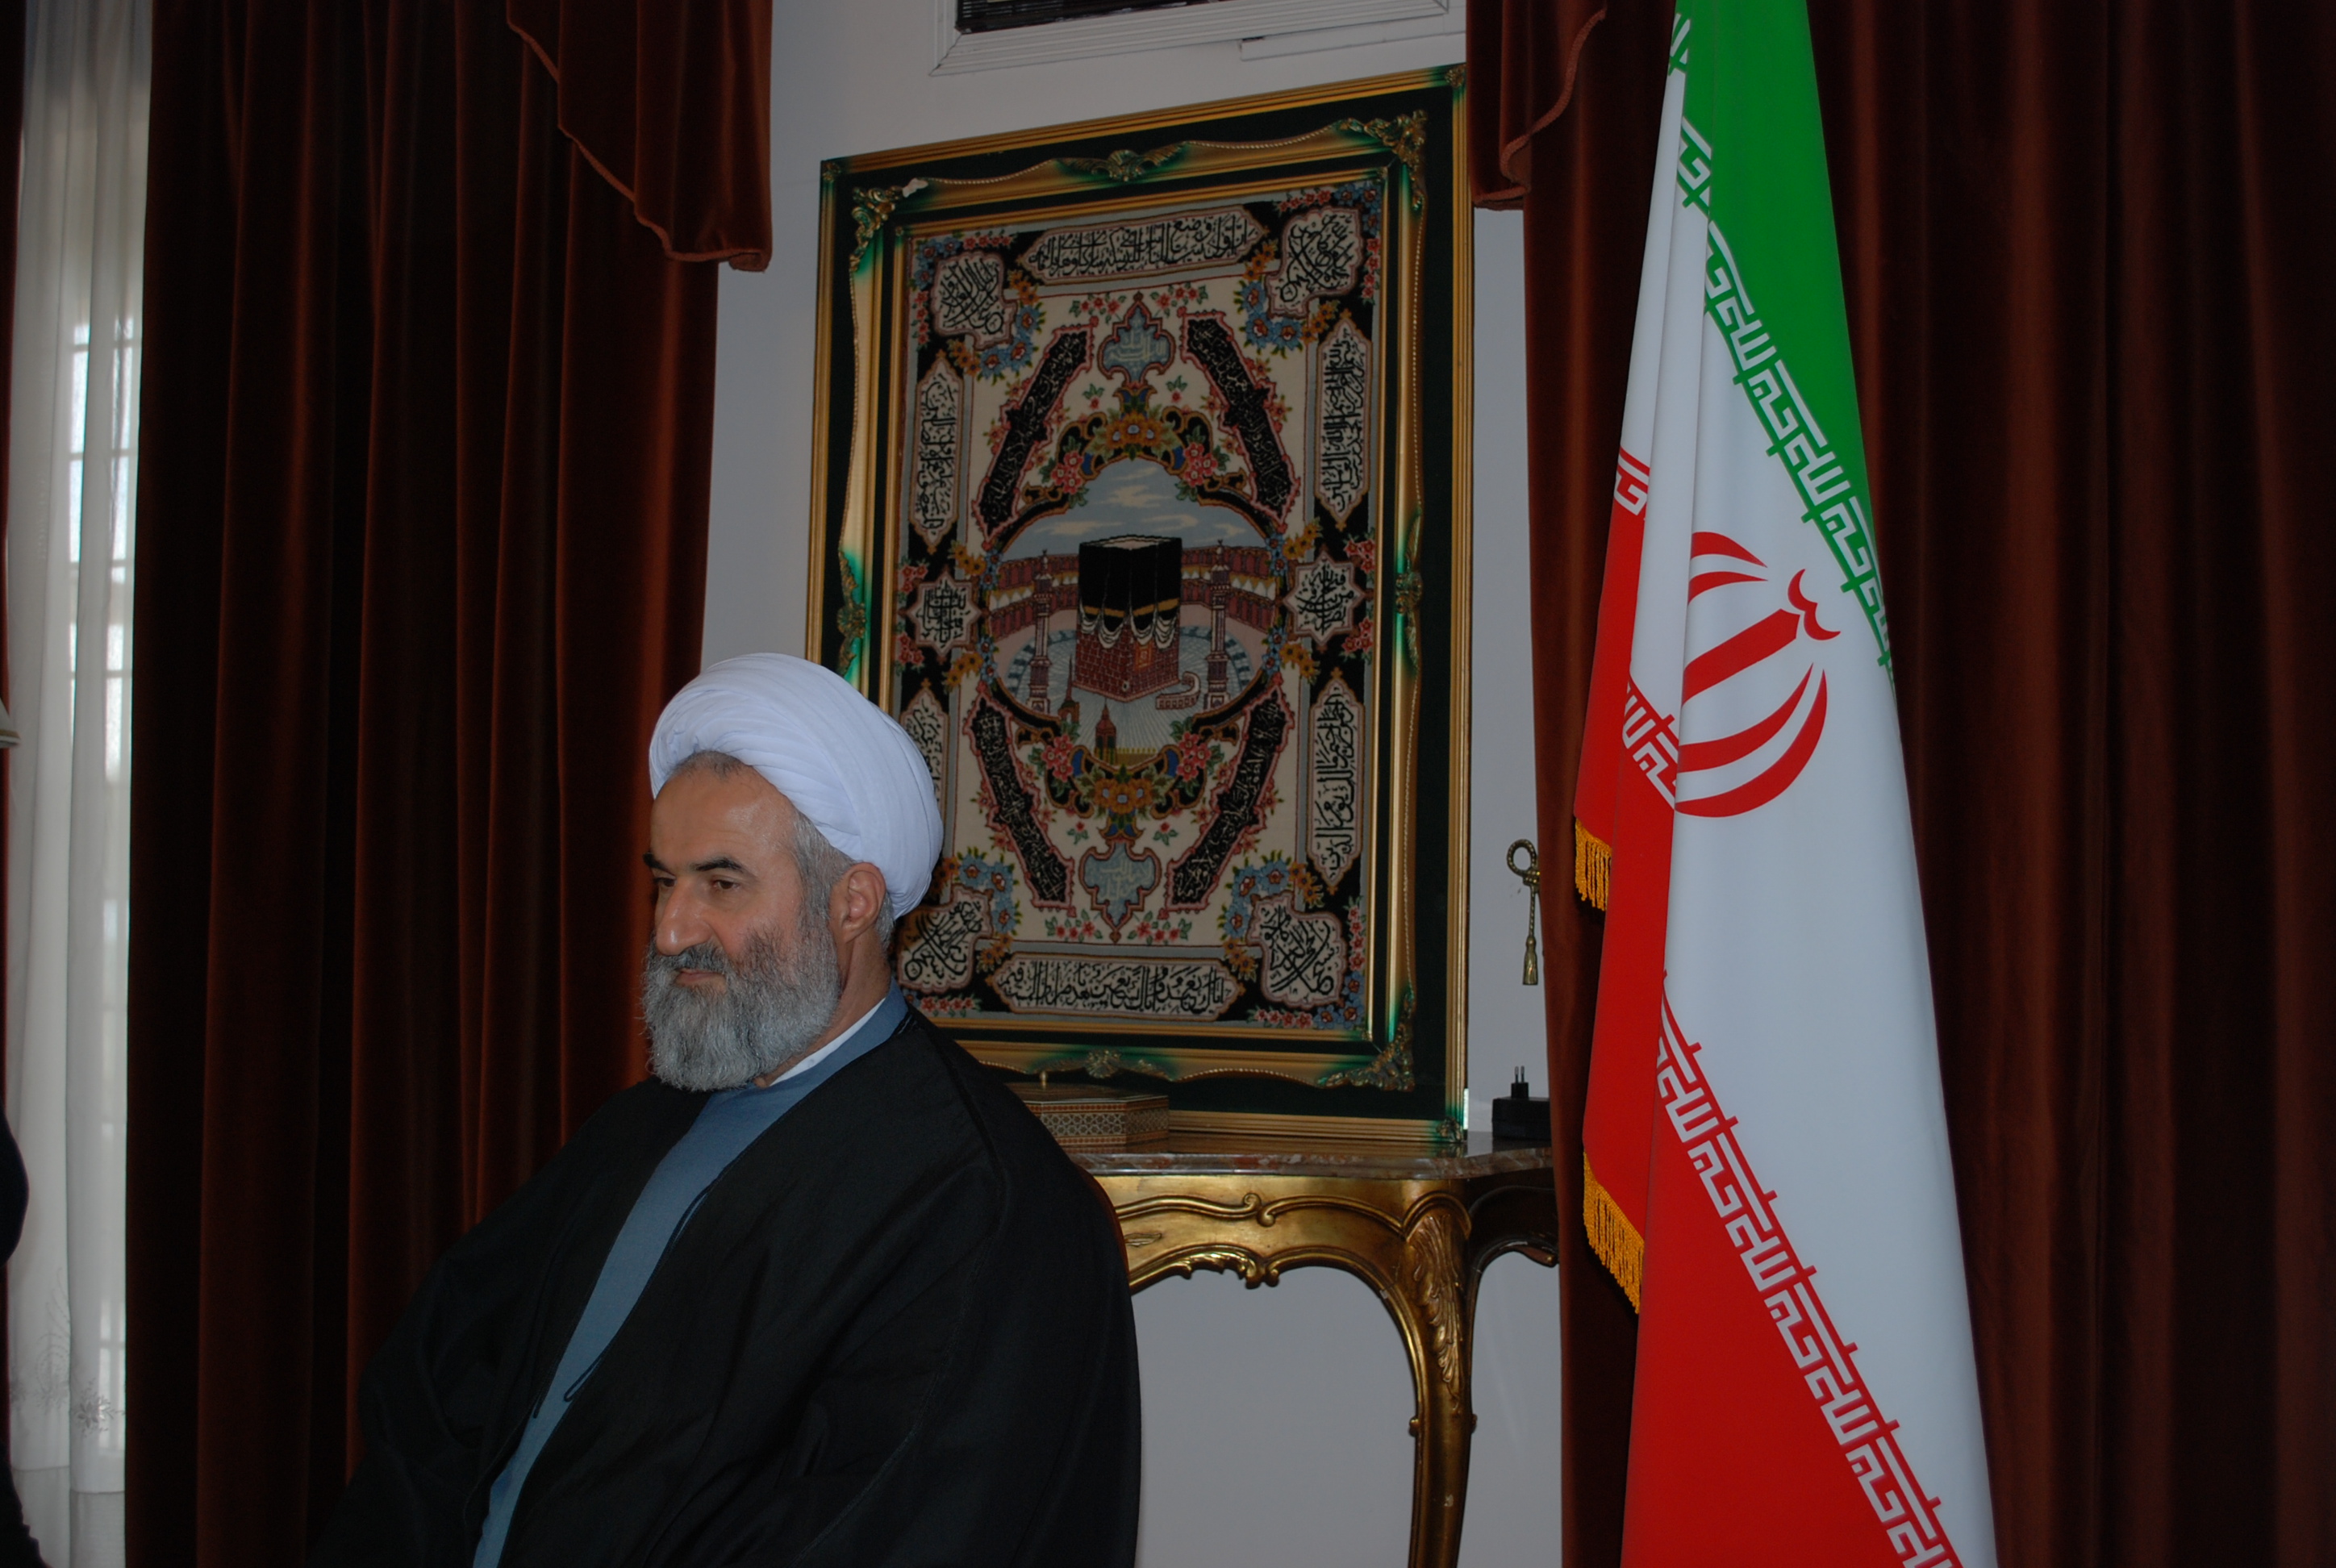 Intervista con sua Eccellenza Ali Akbar Naseri, Ambasciatore della Repubblica Islamica dell’Iran presso il Vaticano.